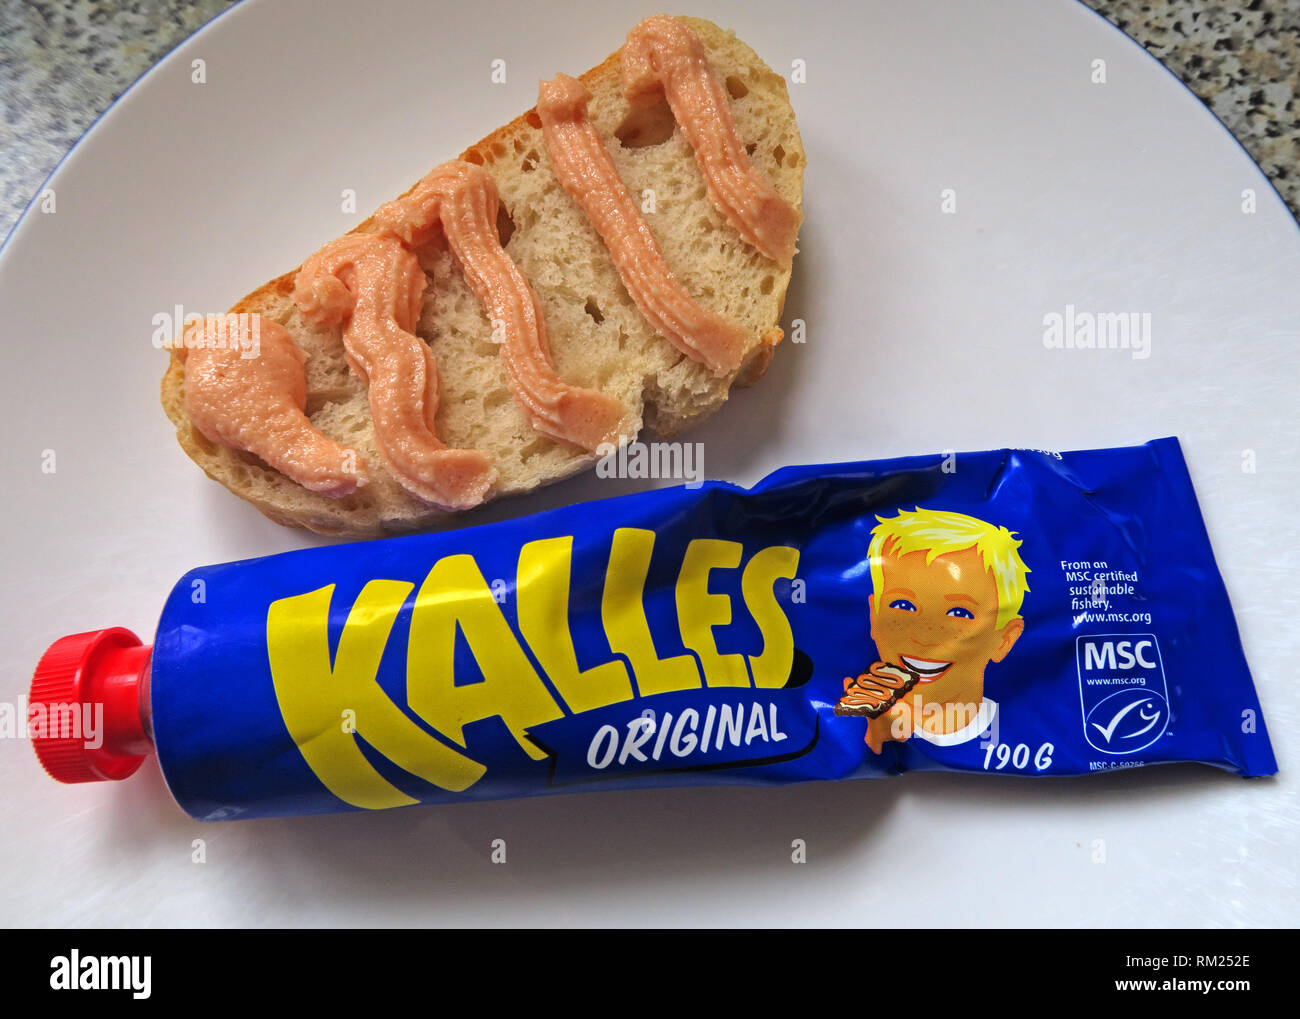 Ein blaues Rohr von kalles Original, Roe mit gesalzenem Kabeljau (Gadus morhua), Zucker, Rapsöl und Gewürzen, spritzte auf frischem Brot, Schwedische IKEA Food Stockfoto